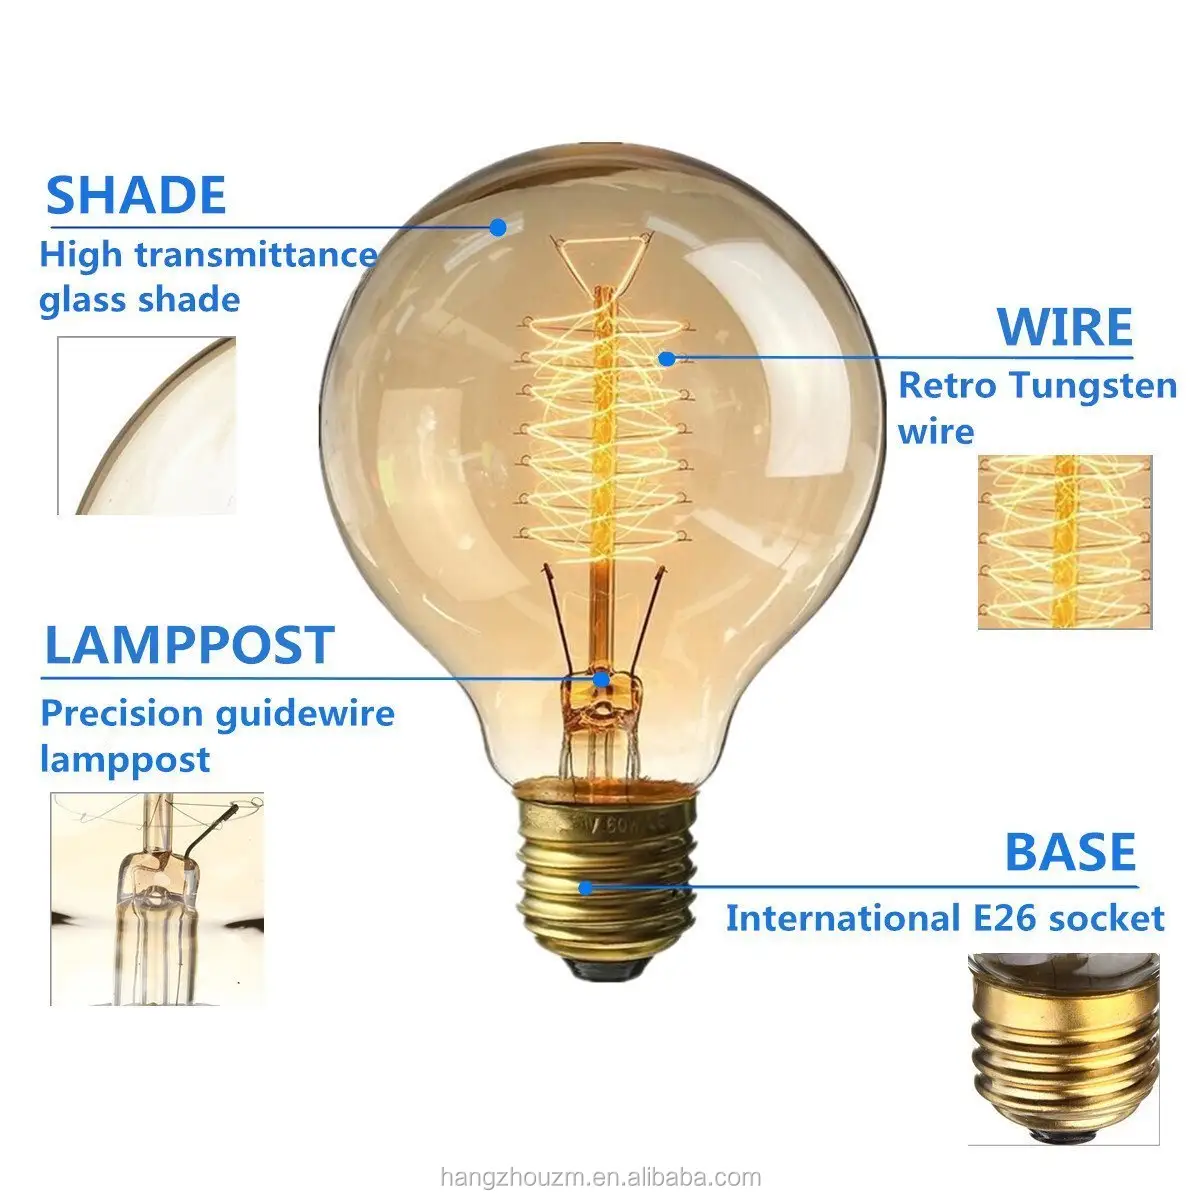 リスケージフィラメントE27ベース110VG80アンティーク調光可能ヴィンテージエジソン電球60W家庭用照明器具用白熱灯